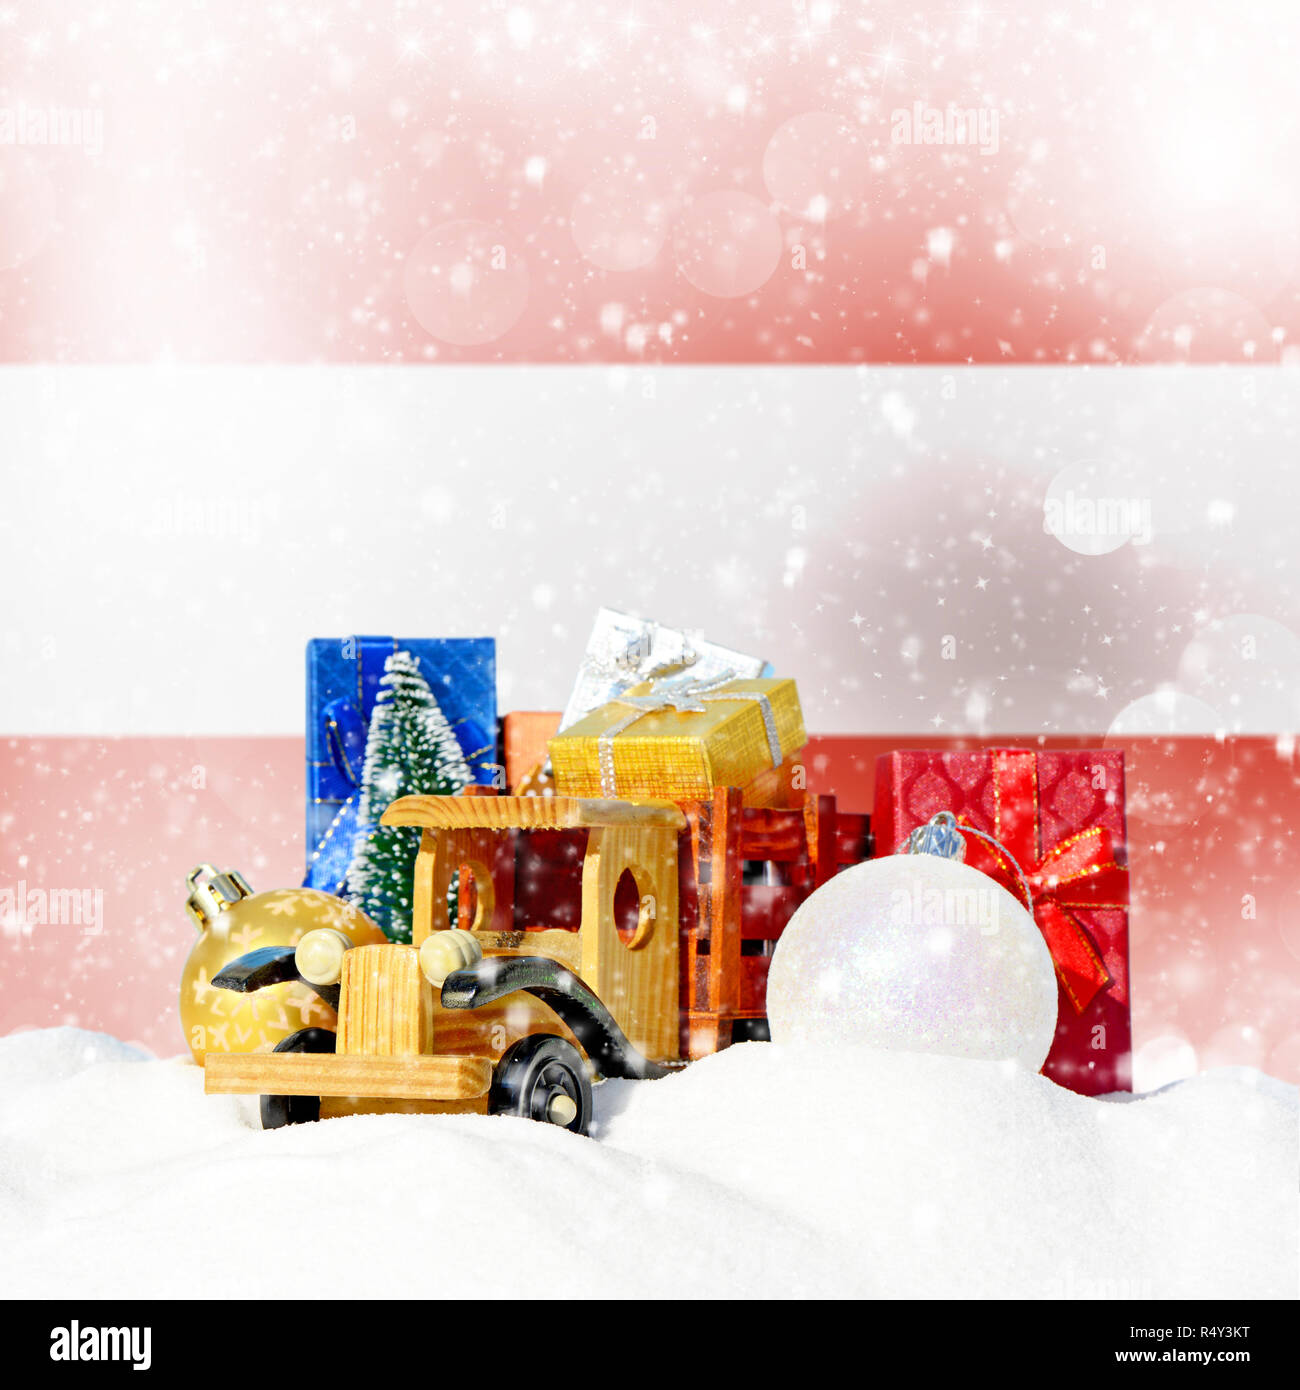 Weihnachten Hintergrund. Spielzeug-LKW mit Geschenken, Neues Jahr Tanne, Kugeln im Schneetreiben und Österreichische Fahne Stockfoto